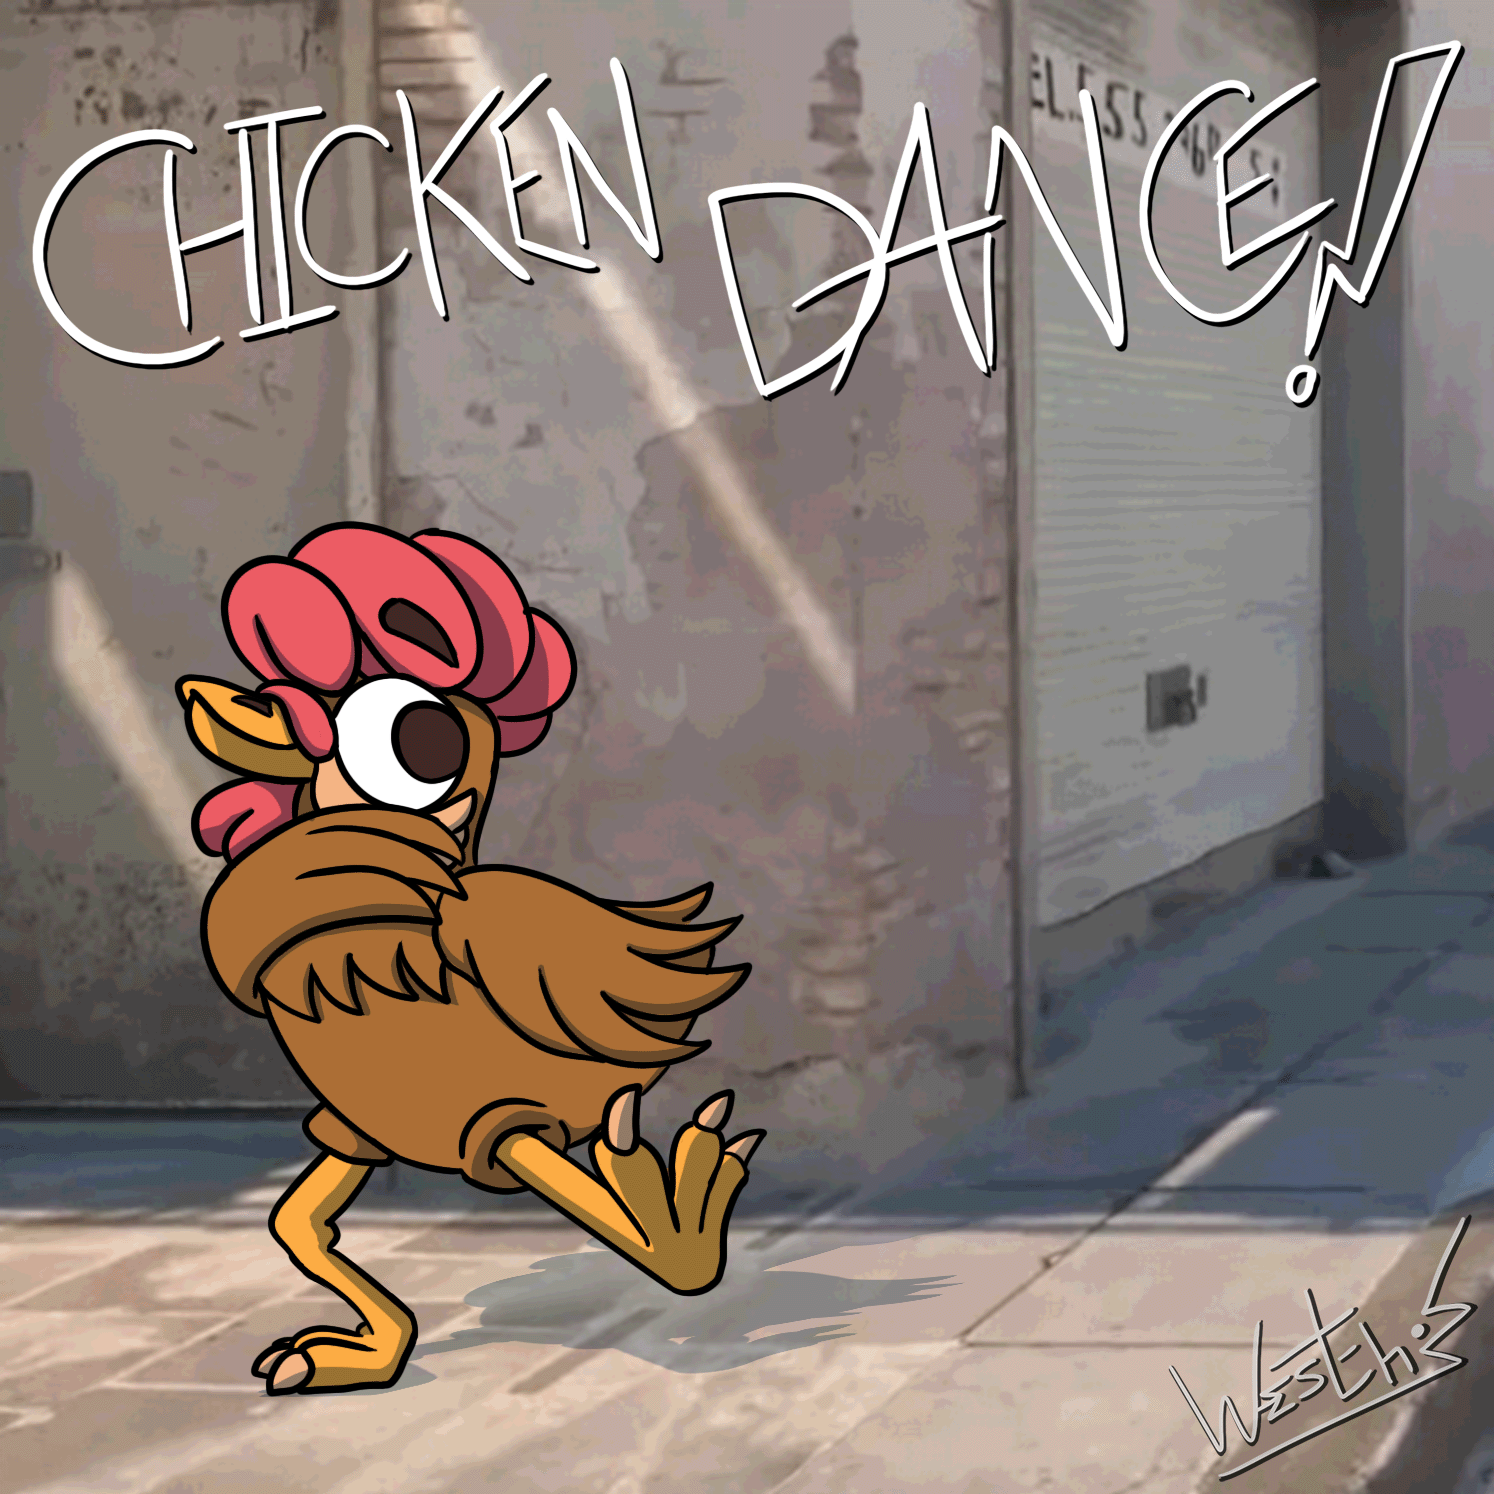 CHICKEN GOT RHYTHM!!
It's time to do the chicken dance! 🐔